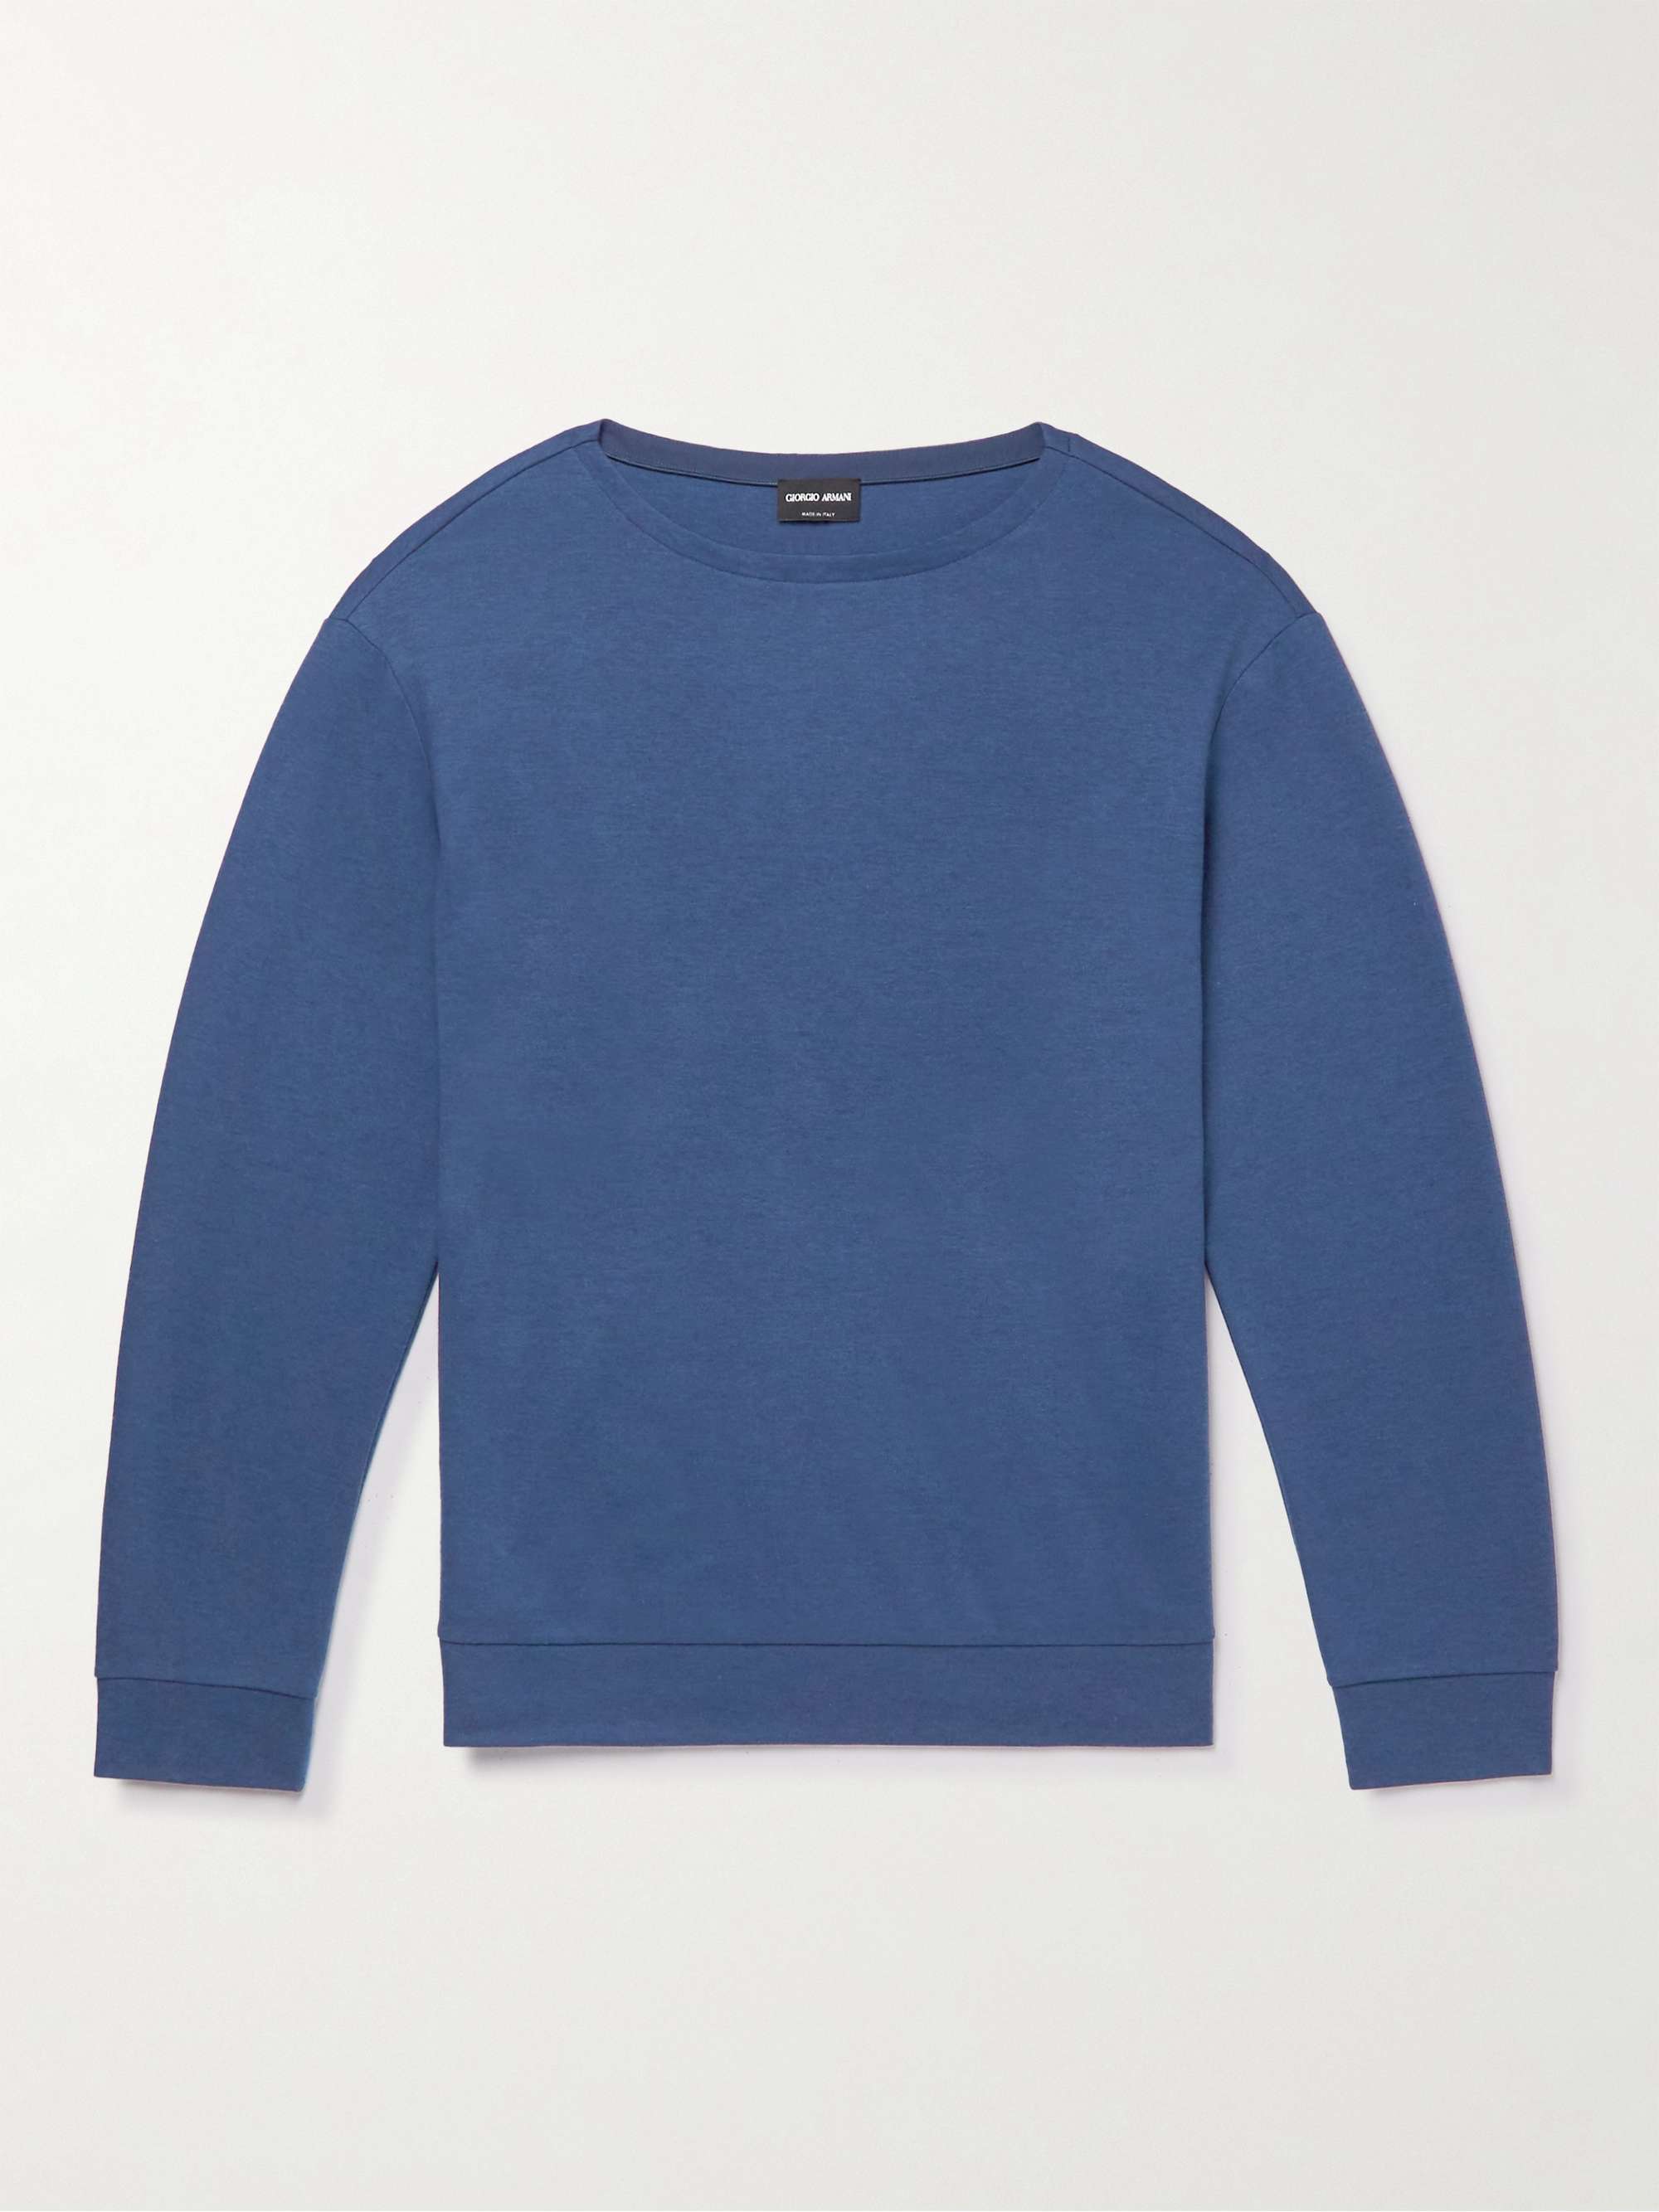 GIORGIO ARMANI Cotton-Blend Sweater